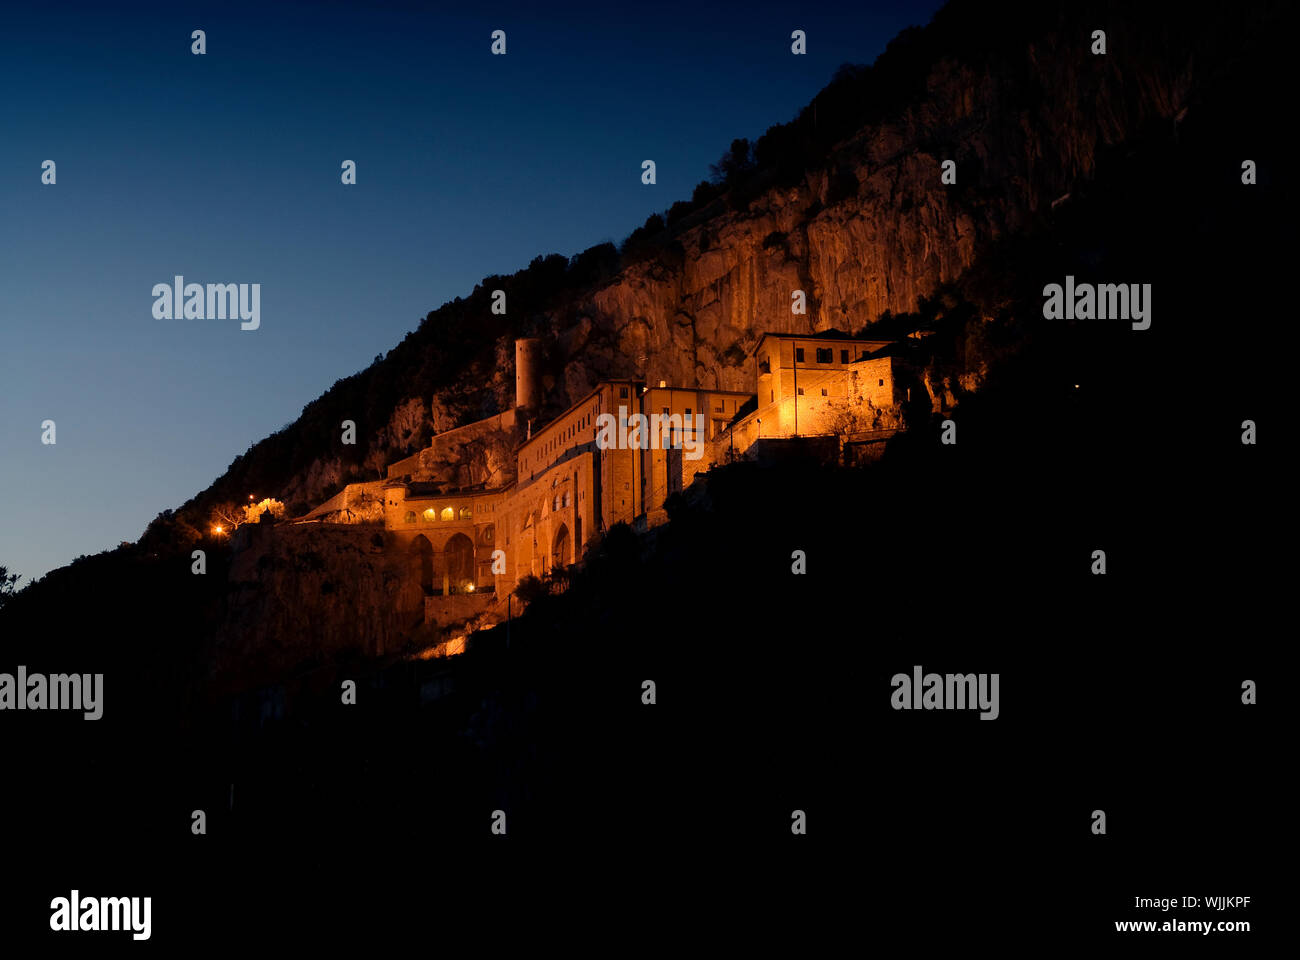 Saint Benedict's Monastery / Sacro Speco Sanctuary - Subiaco - Italy - External sunset nightscape Stock Photo